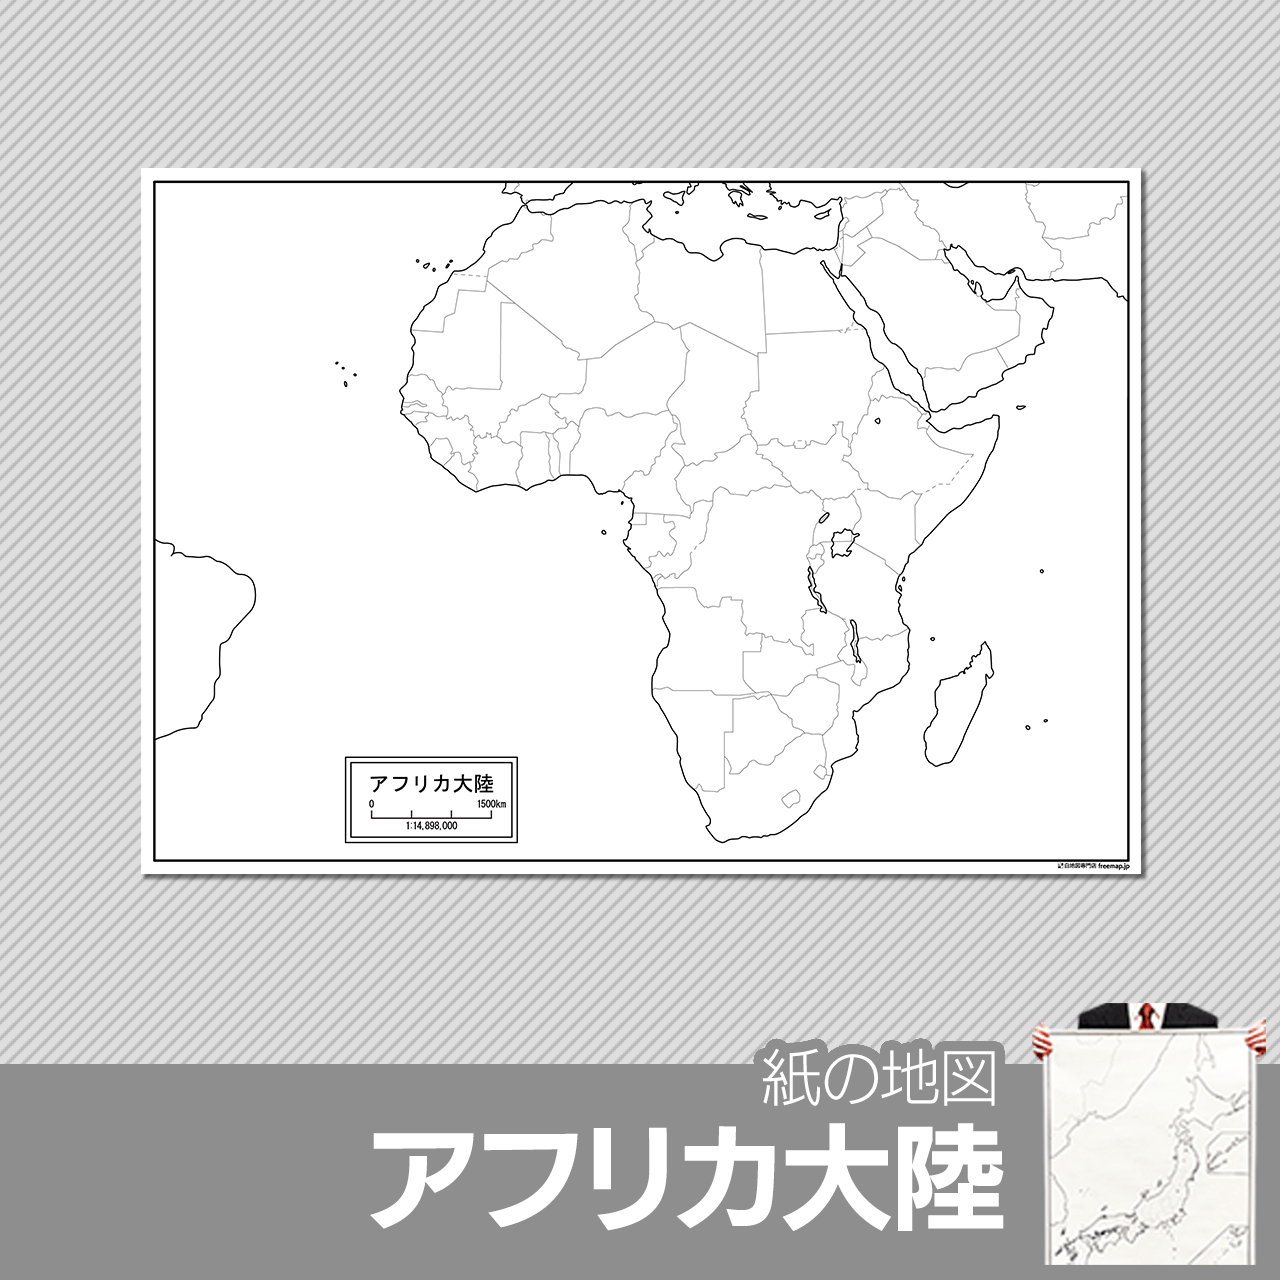 アフリカ大陸の紙の白地図のサムネイル